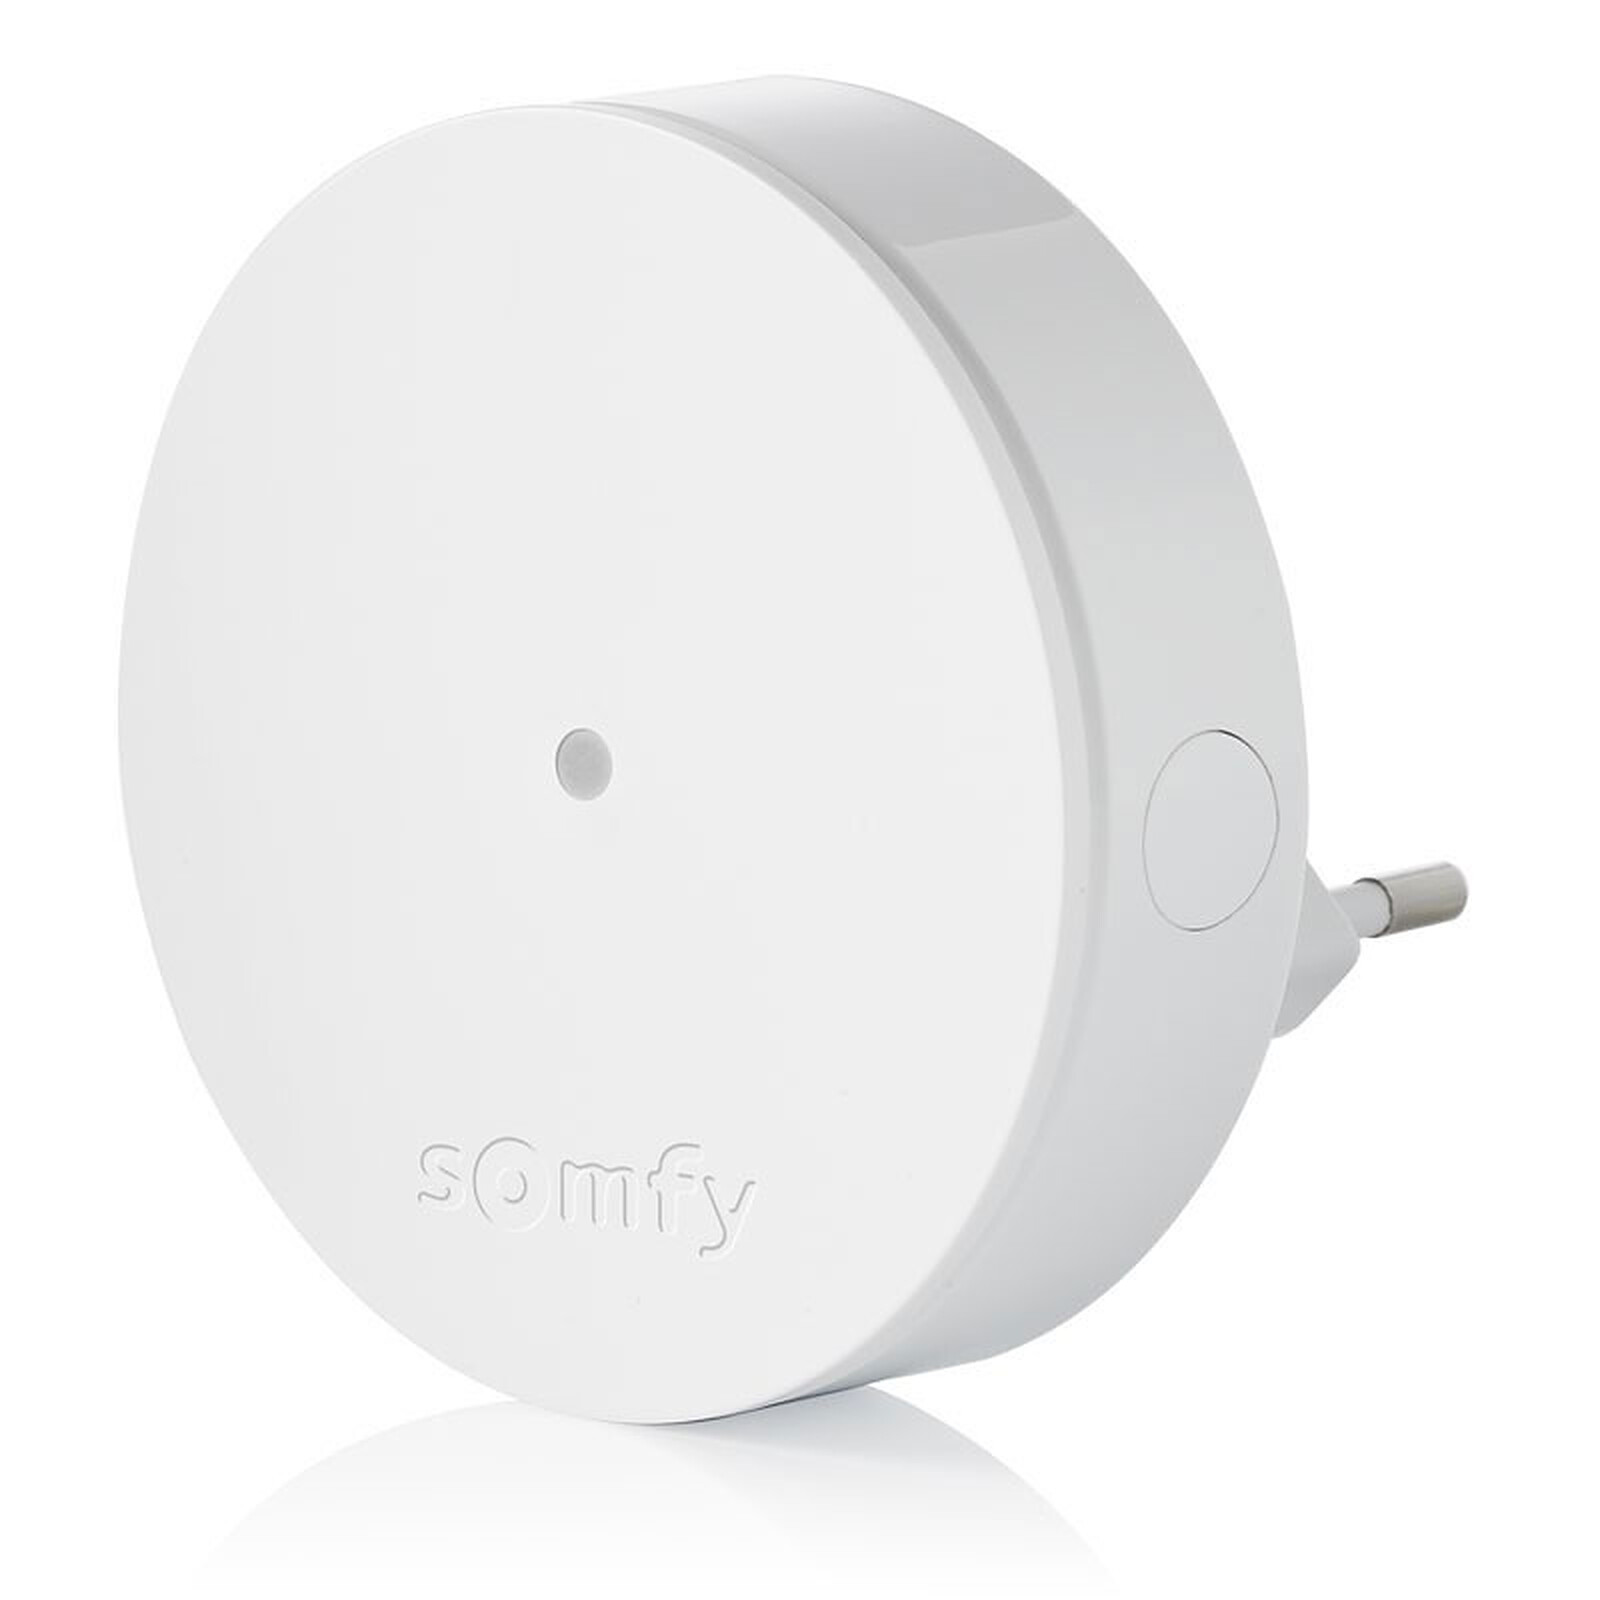 Somfy Home Alarm Protect Système Sécurité